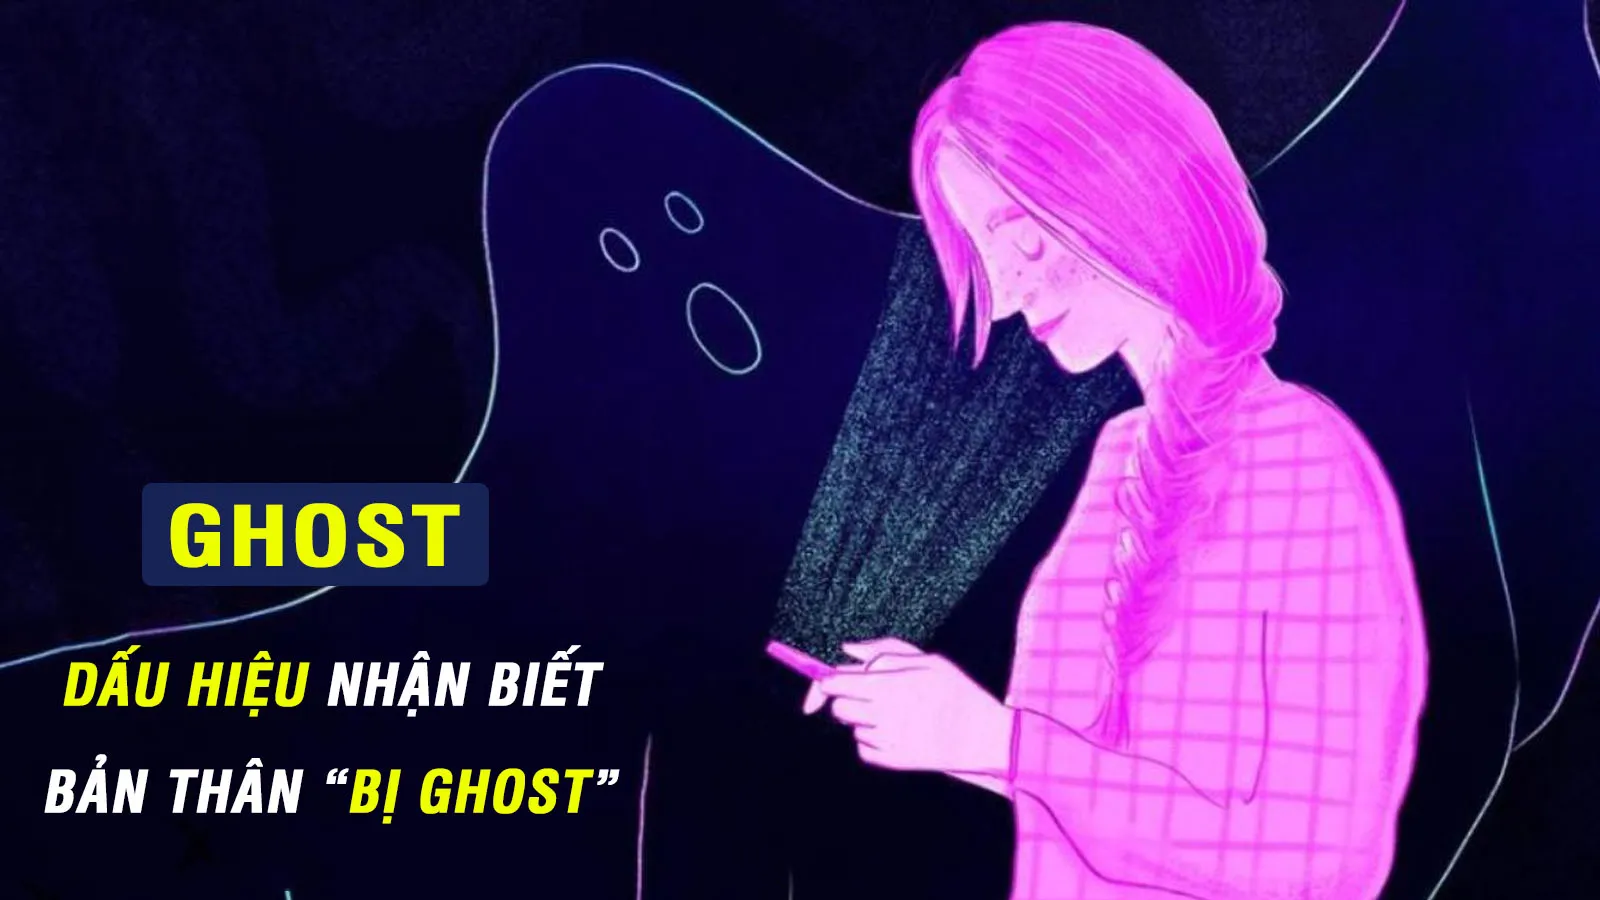 Ghost là gì? Ý nghĩa của từ ghosting trong tình yêu